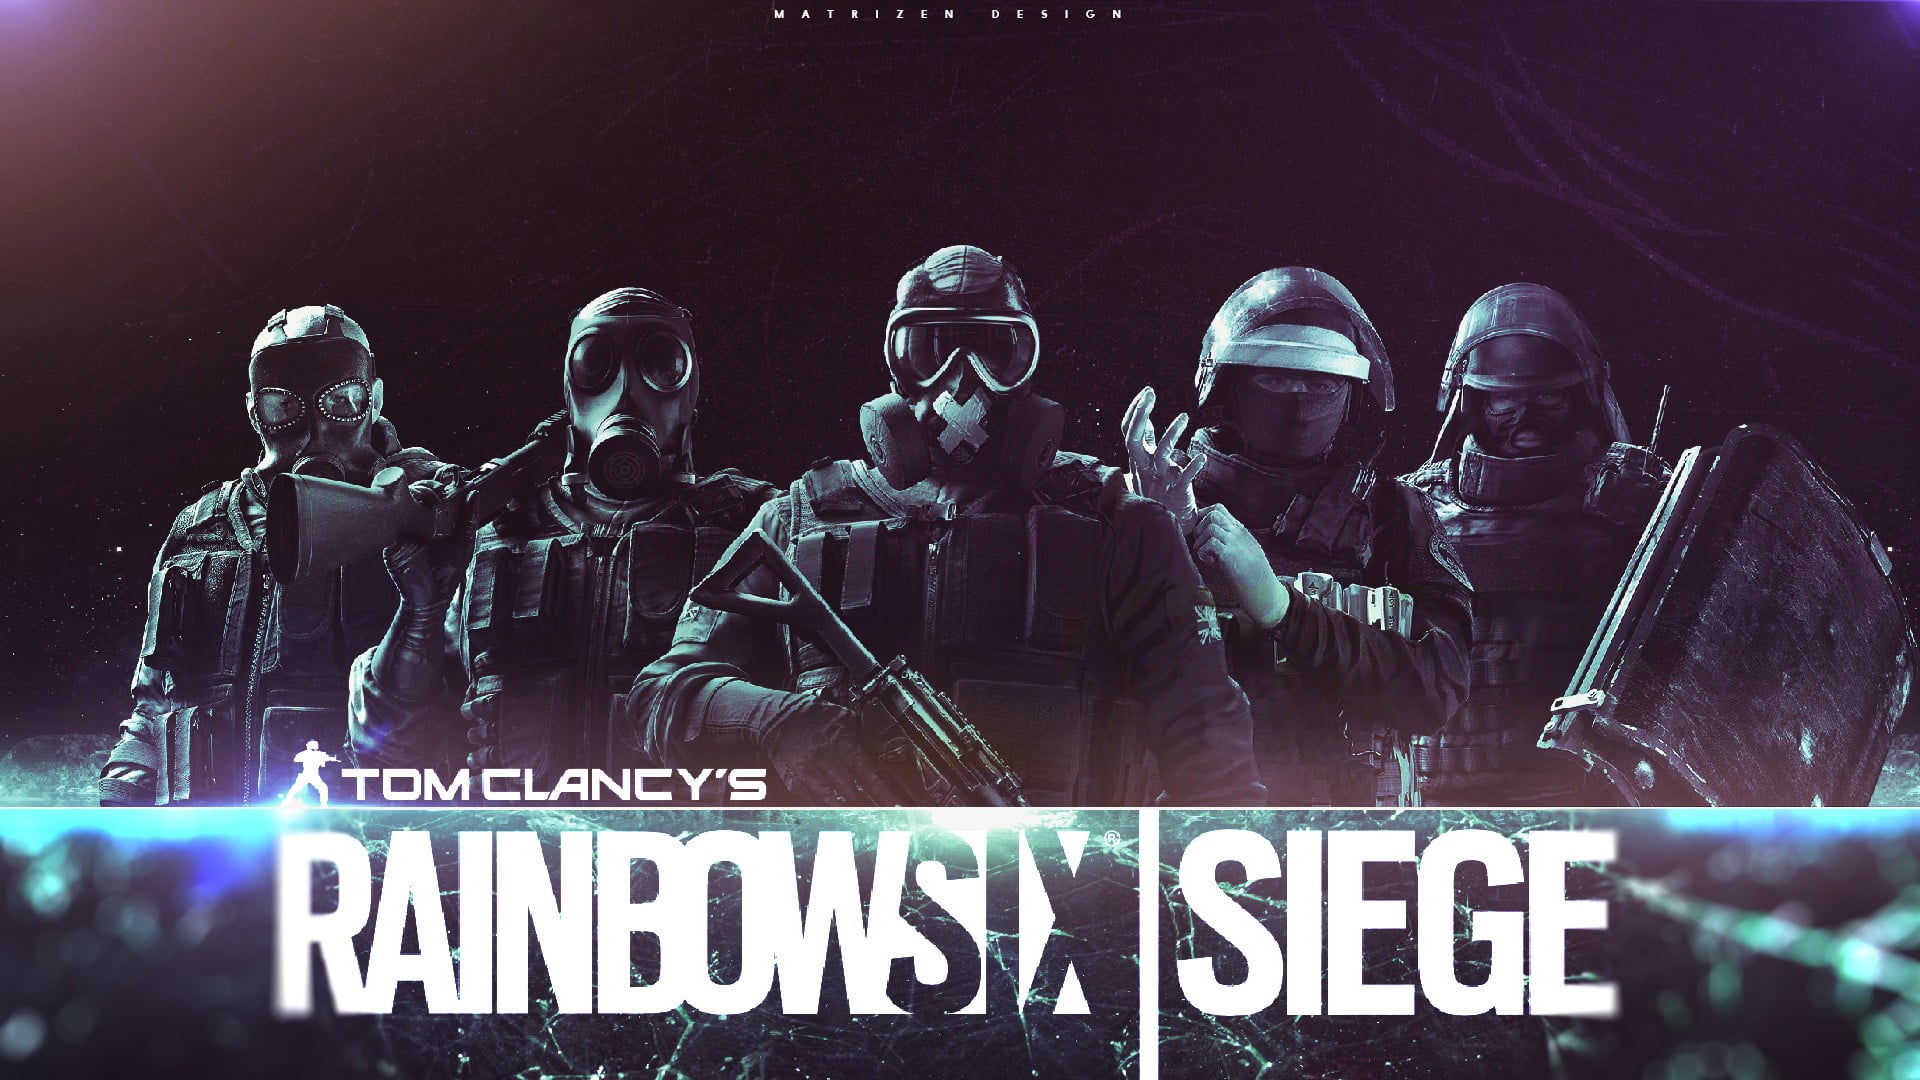 Rainbow Six Siege digital wallpaper